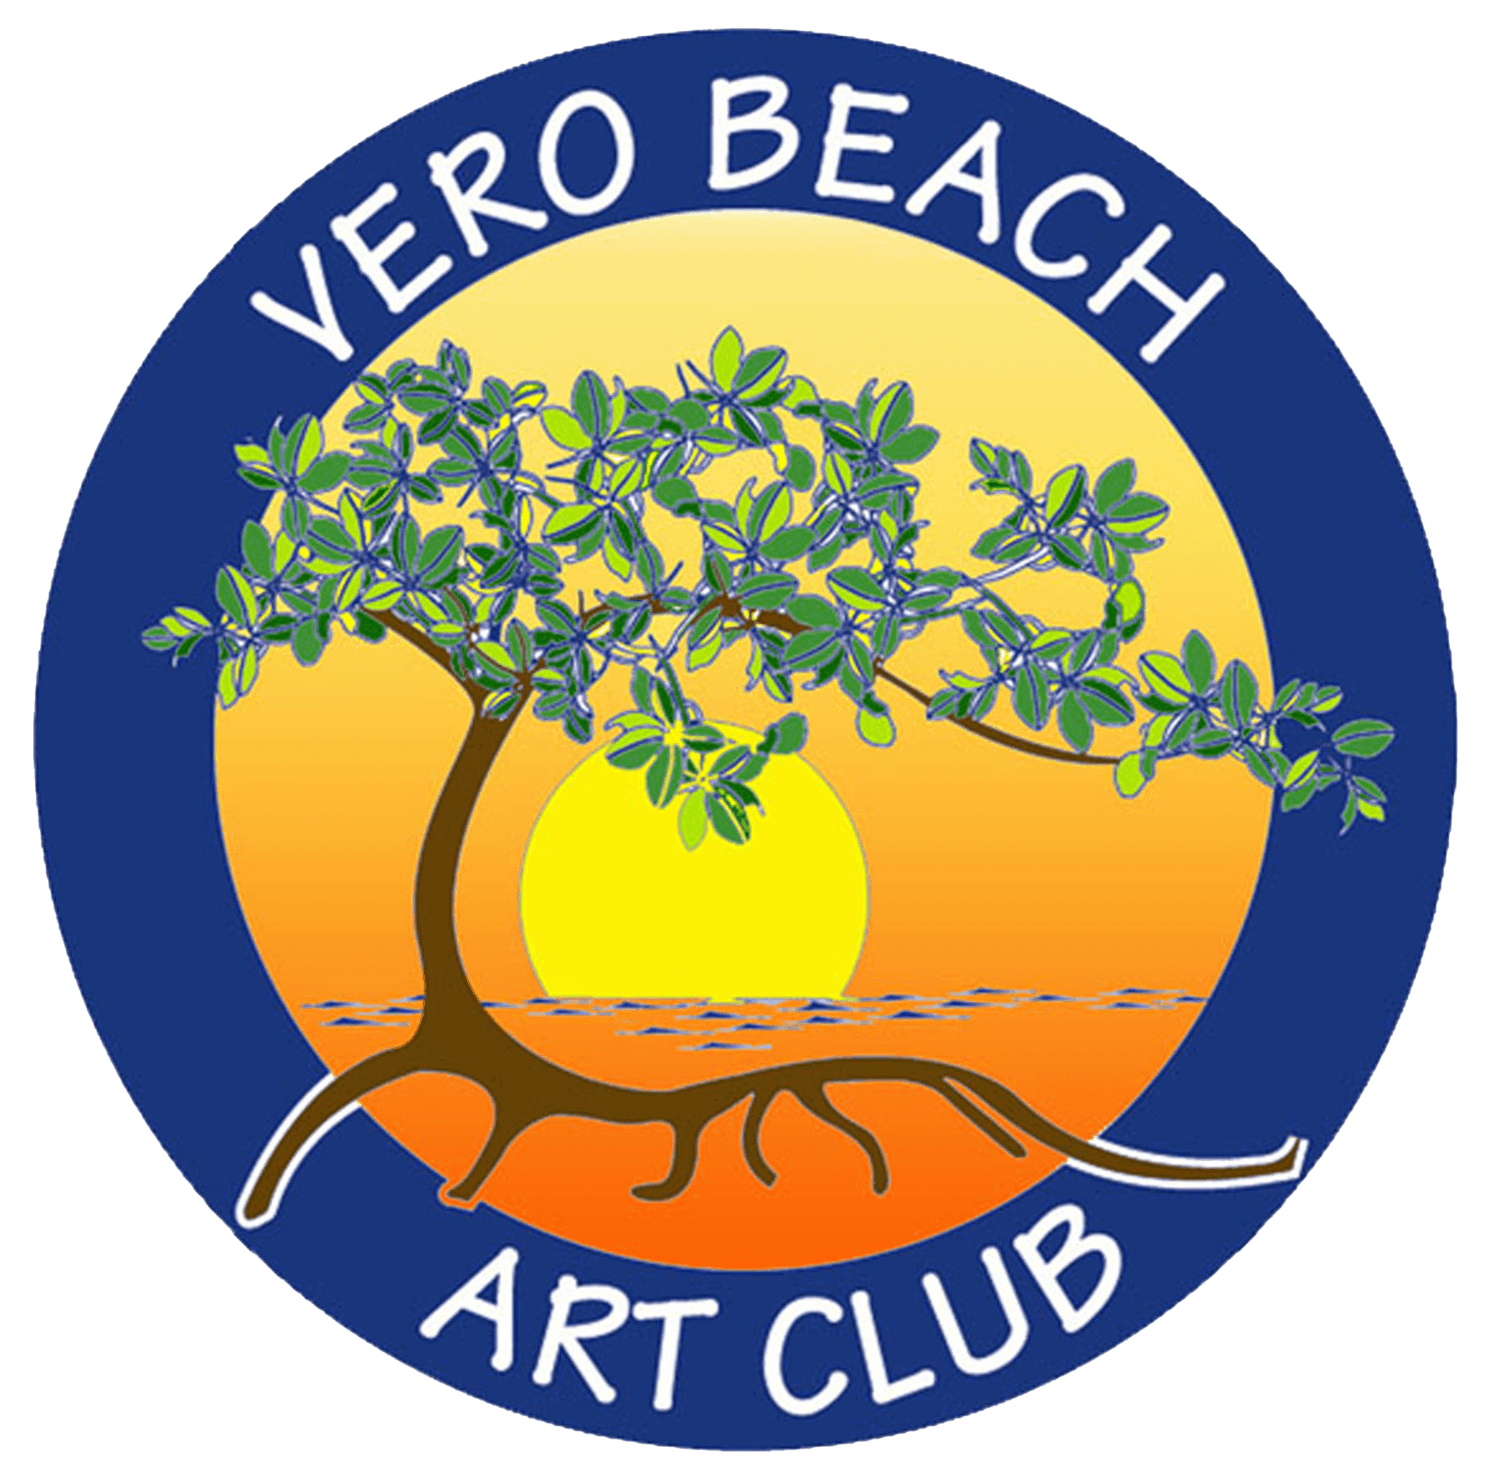 Vero BeachArt Club logo 